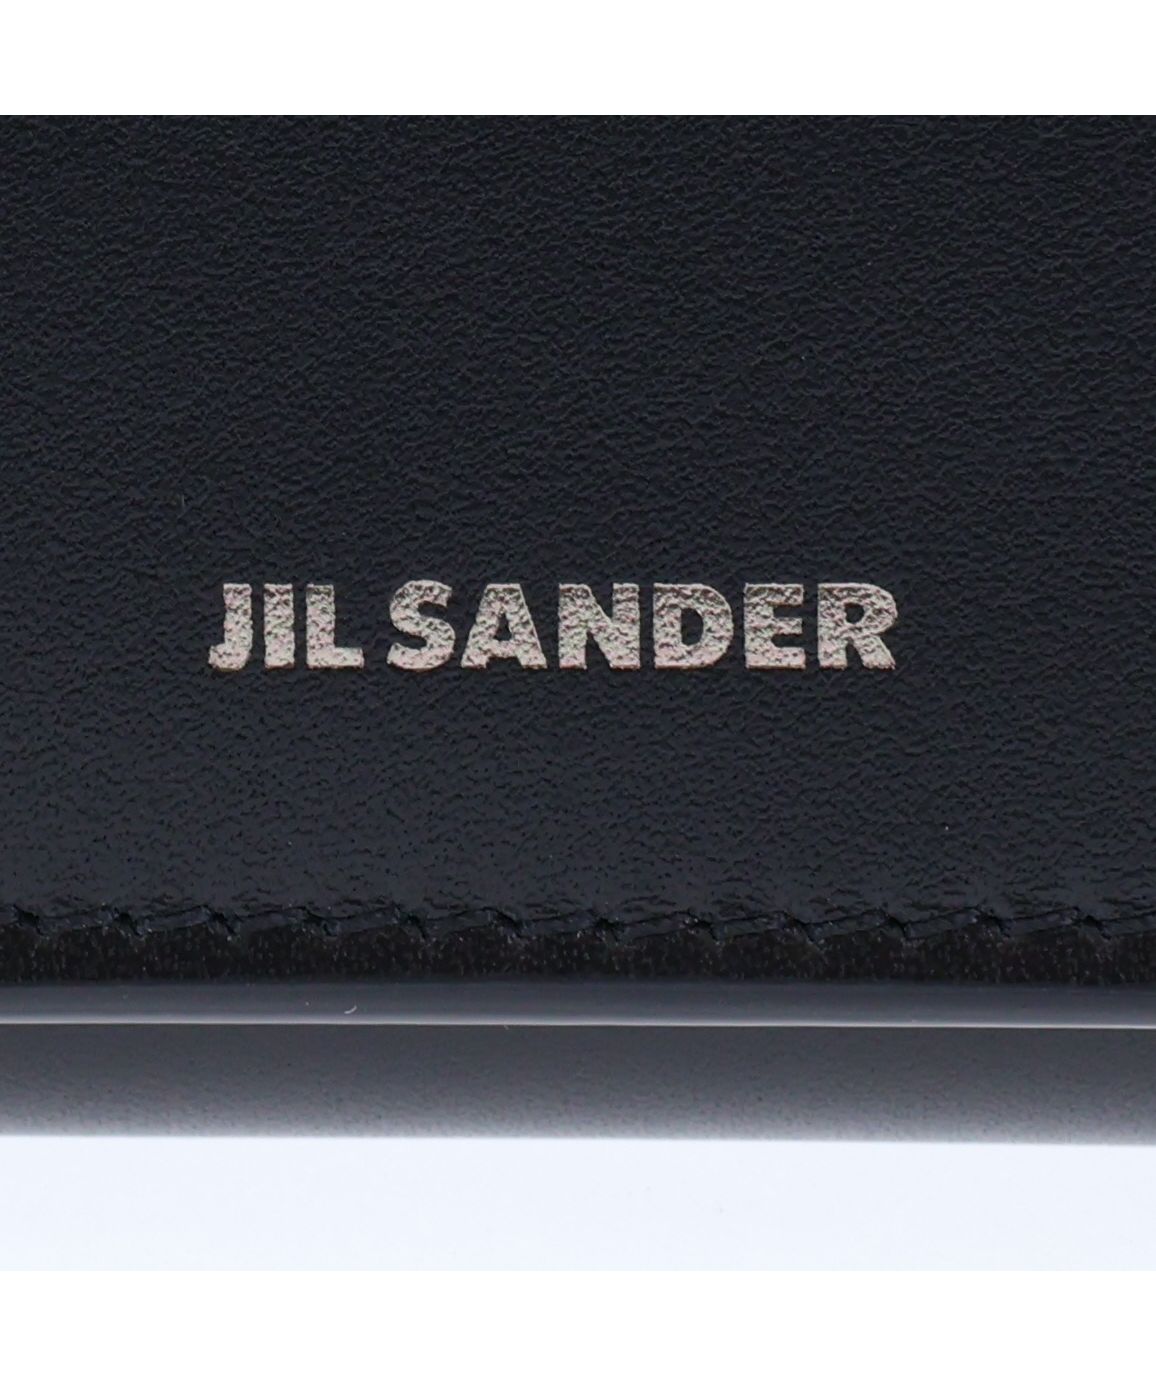 ジルサンダー JIL SANDER 財布 三つ折り オリガミ ウォレット メンズ